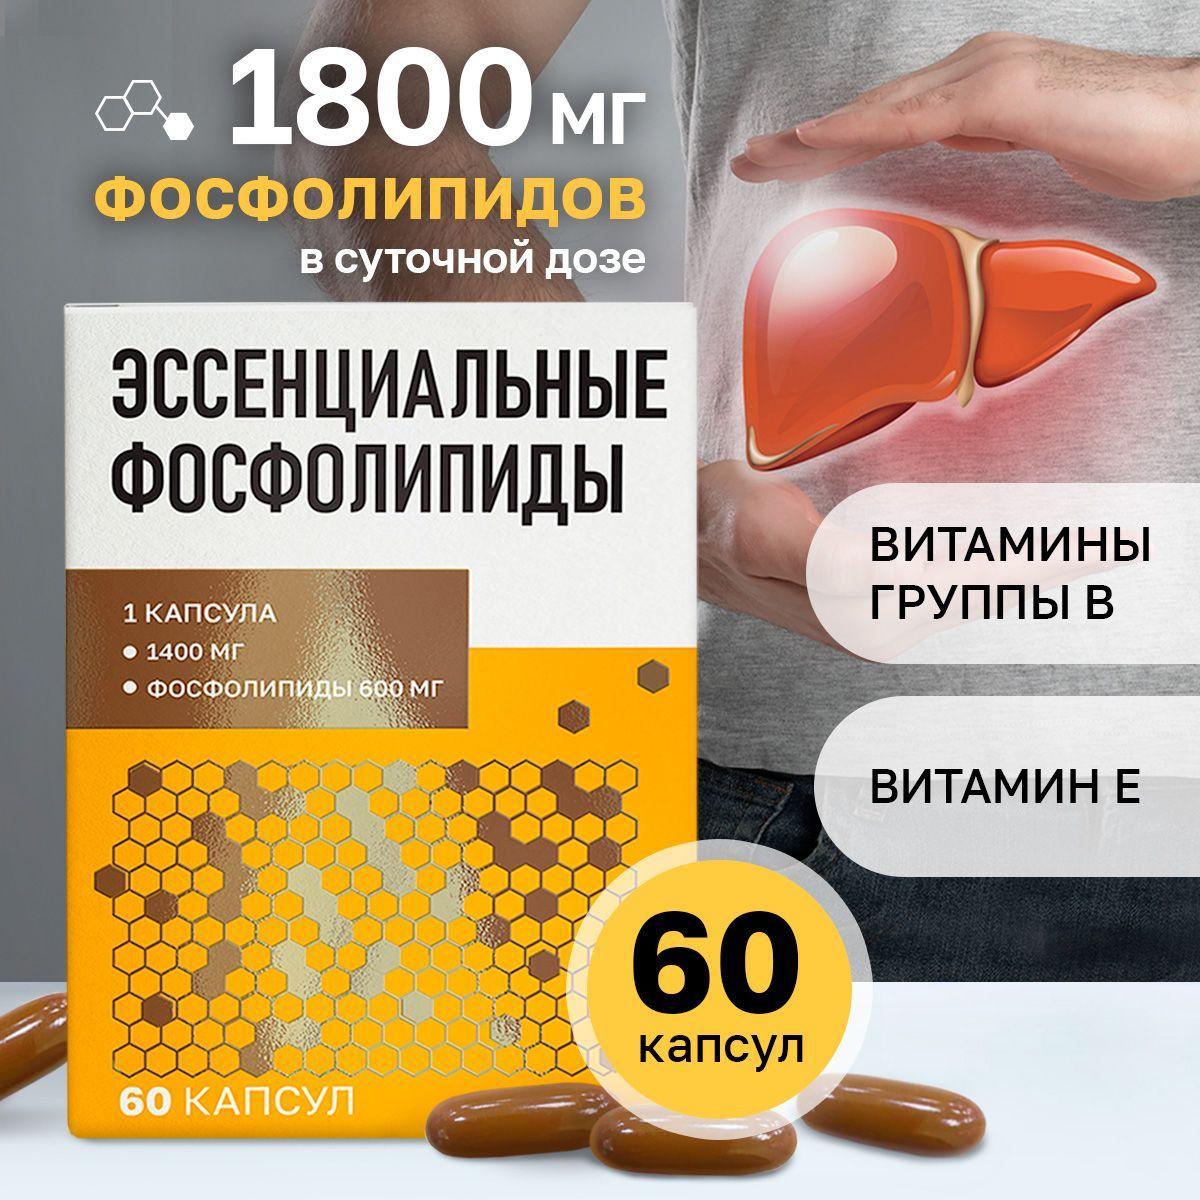 Mirrolla, Эссенциальные фосфолипиды, для печени бад. 60 капсул по 1400 мг